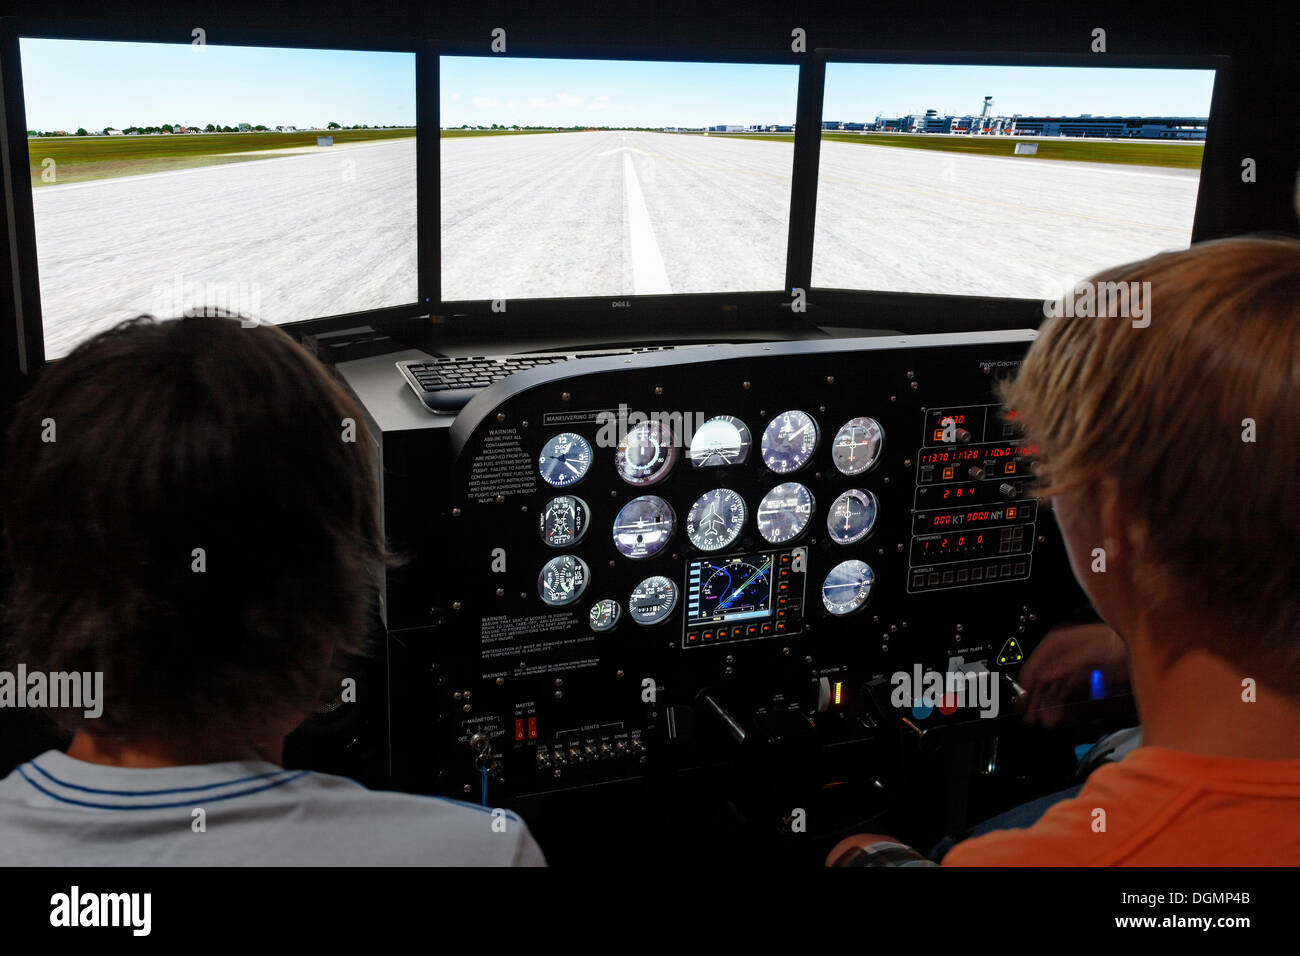 Los adolescentes como pilotos en un Prop Cockpit Trainer, simulador de vuelo, IdeenPark 2012, tecnología y educación conferencia cumbre para Foto de stock